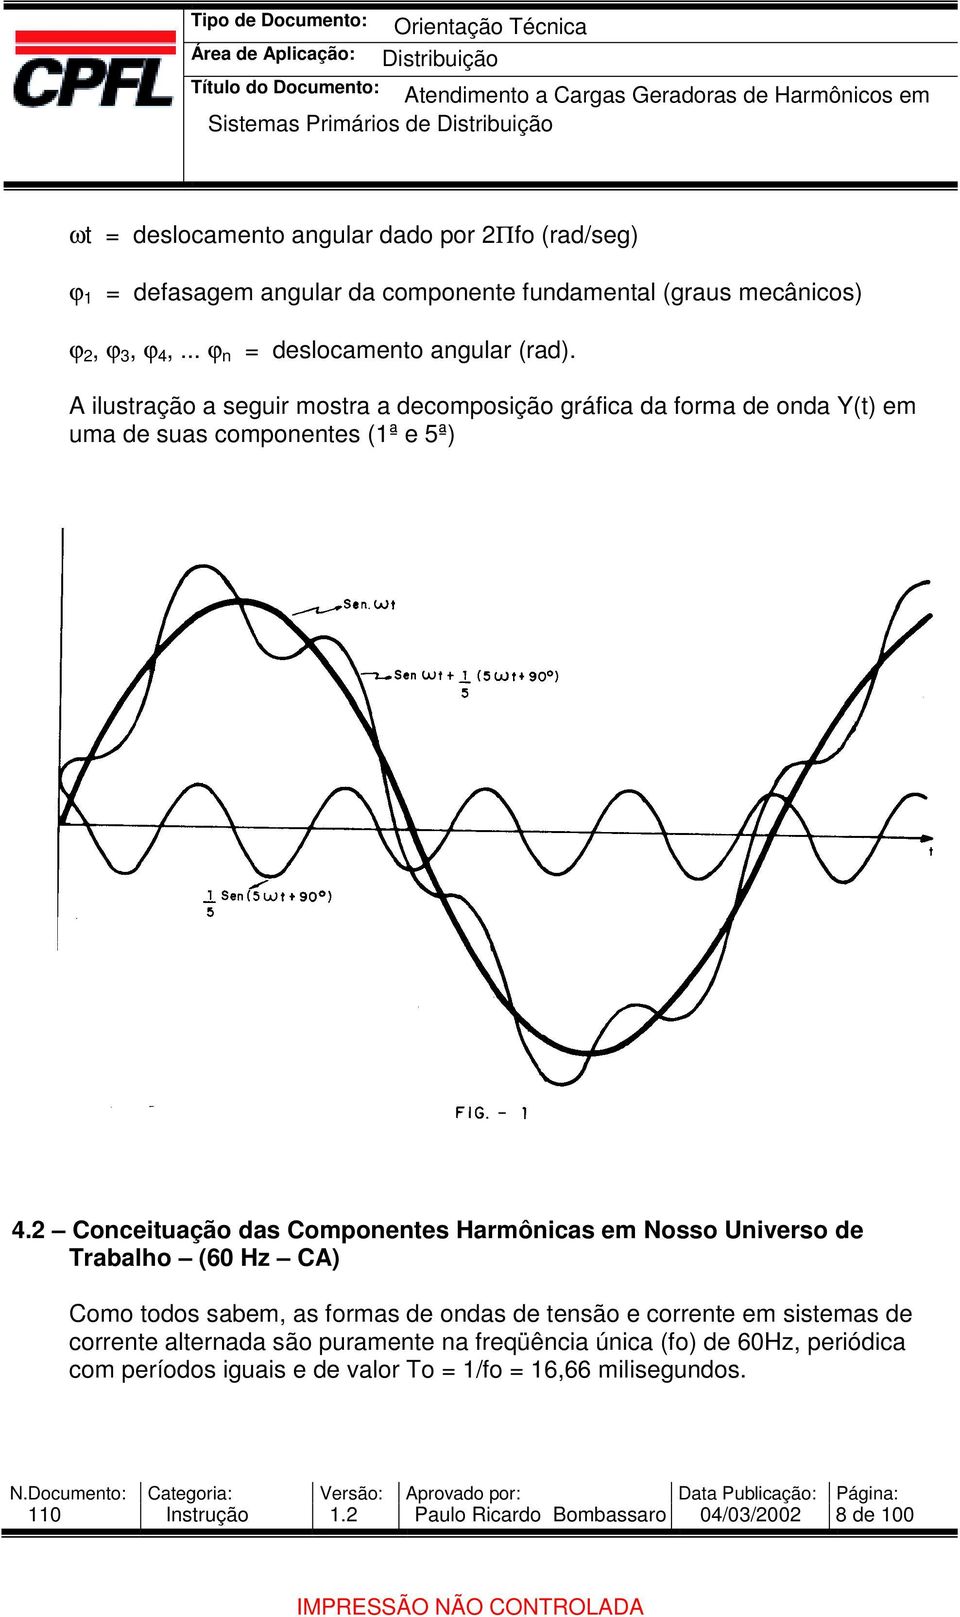 Conceituação das Componentes Harmônicas em Nosso Universo de Trabalho (60 Hz CA) Como todos sabem, as formas de ondas de tensão e corrente em sistemas de